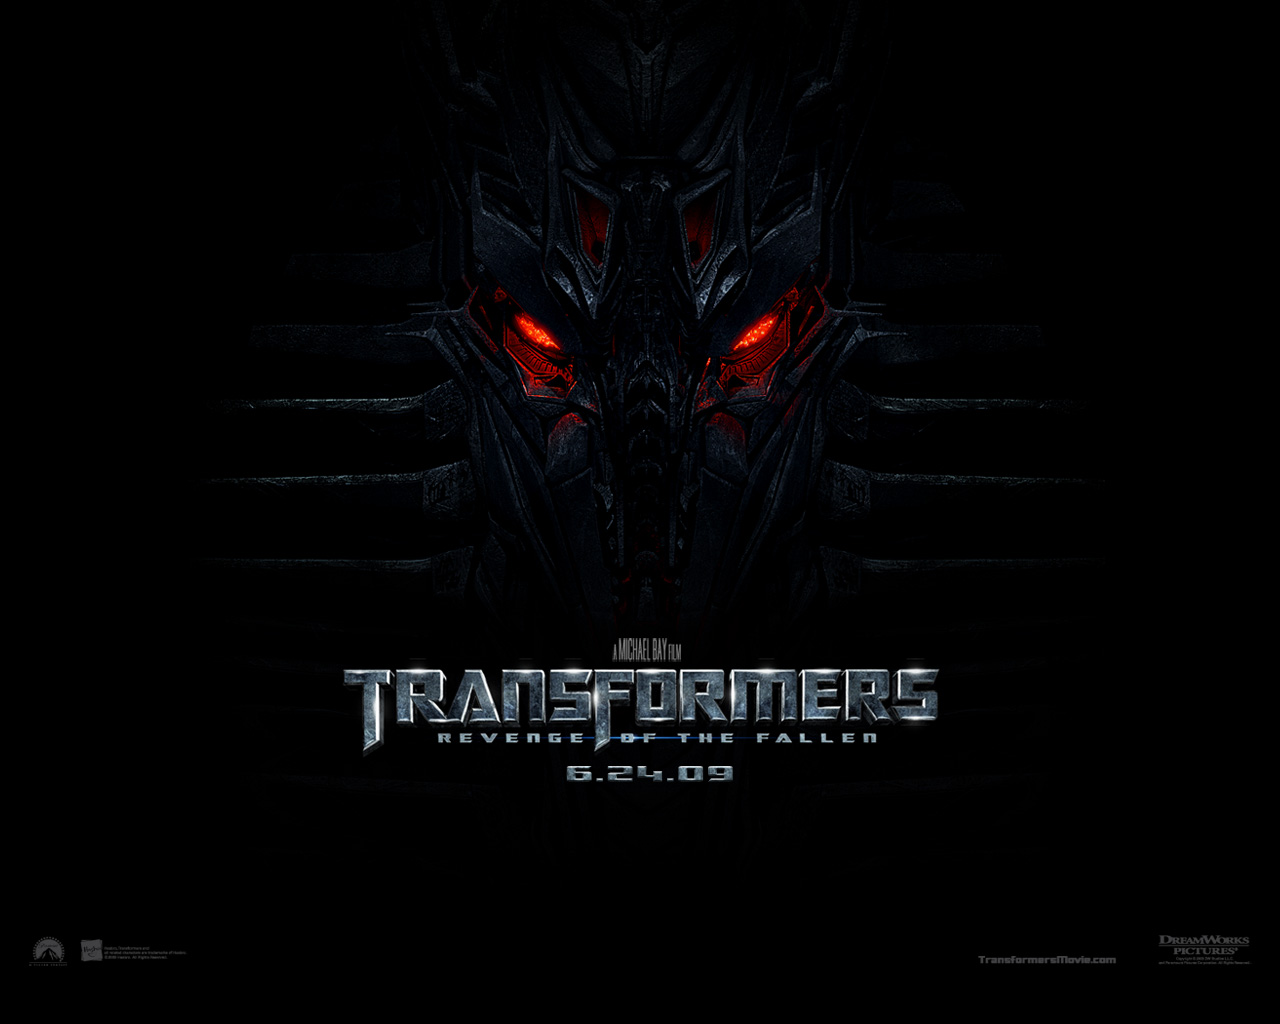 "Transformers: Revenge of the Fallen" desktop wallpaper number 1 (1280 x 1024 pixels)